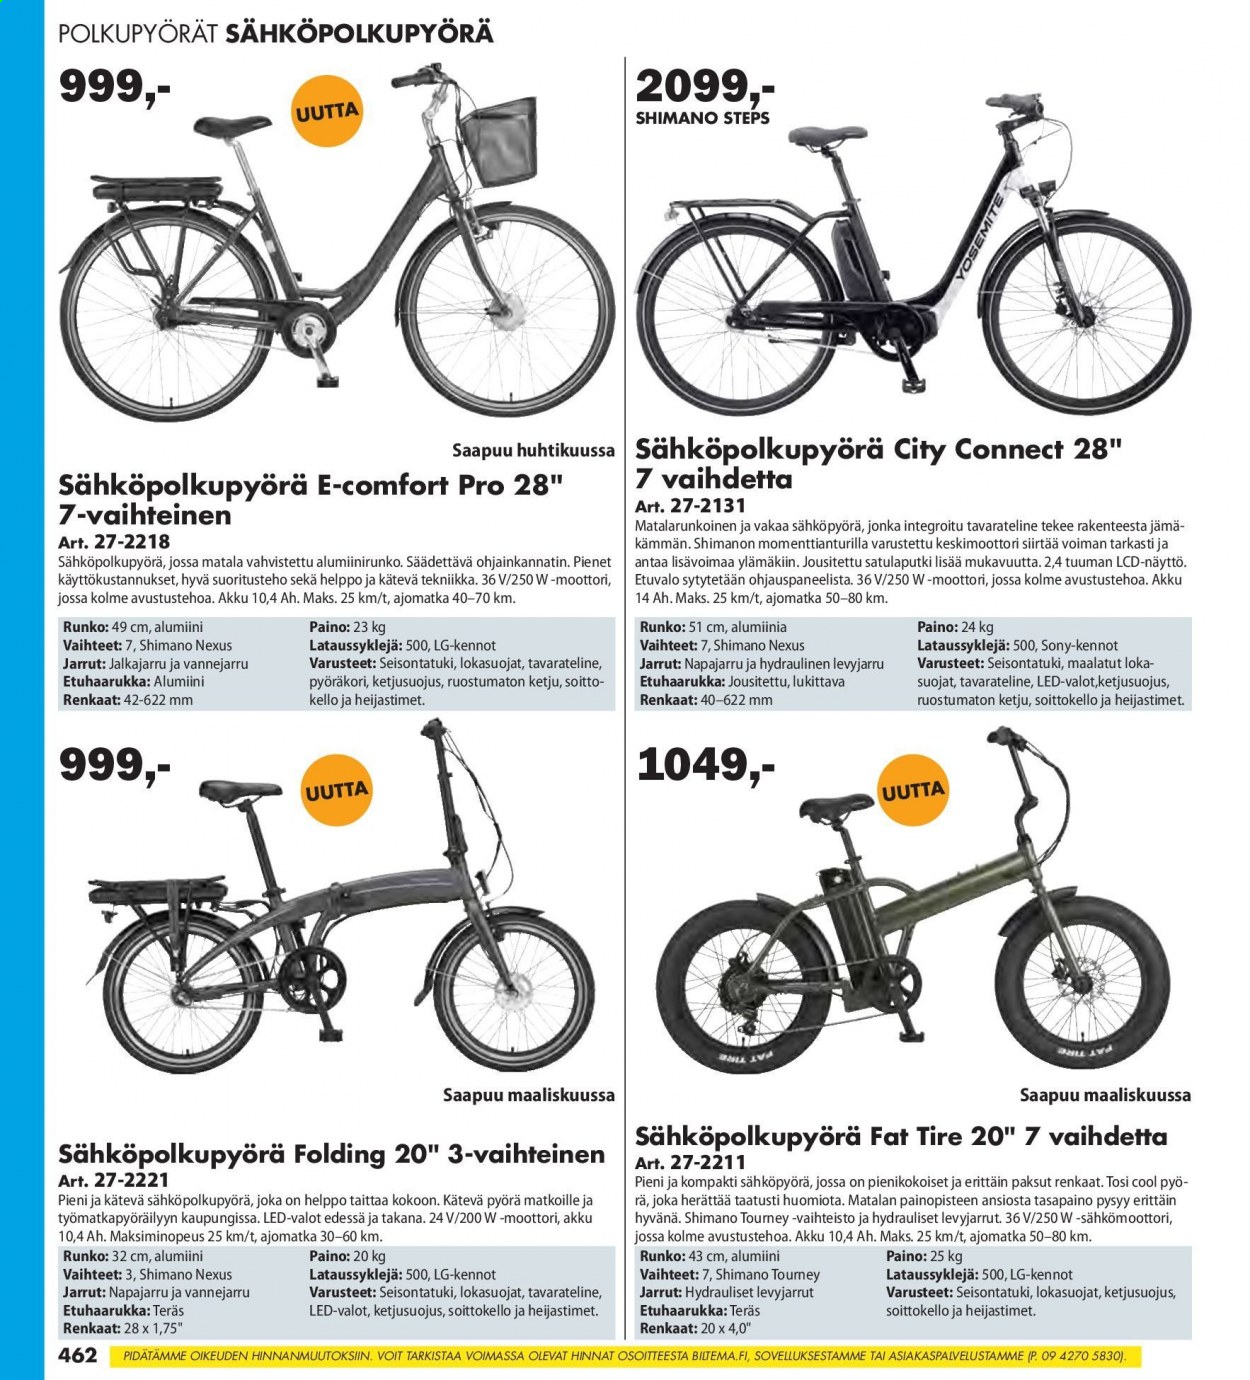 thumbnail - Biltema tarjoukset  - Tarjoustuotteet - LG, Sony, pyörä, Shimano, polkupyörä, renkaat. Sivu 462.